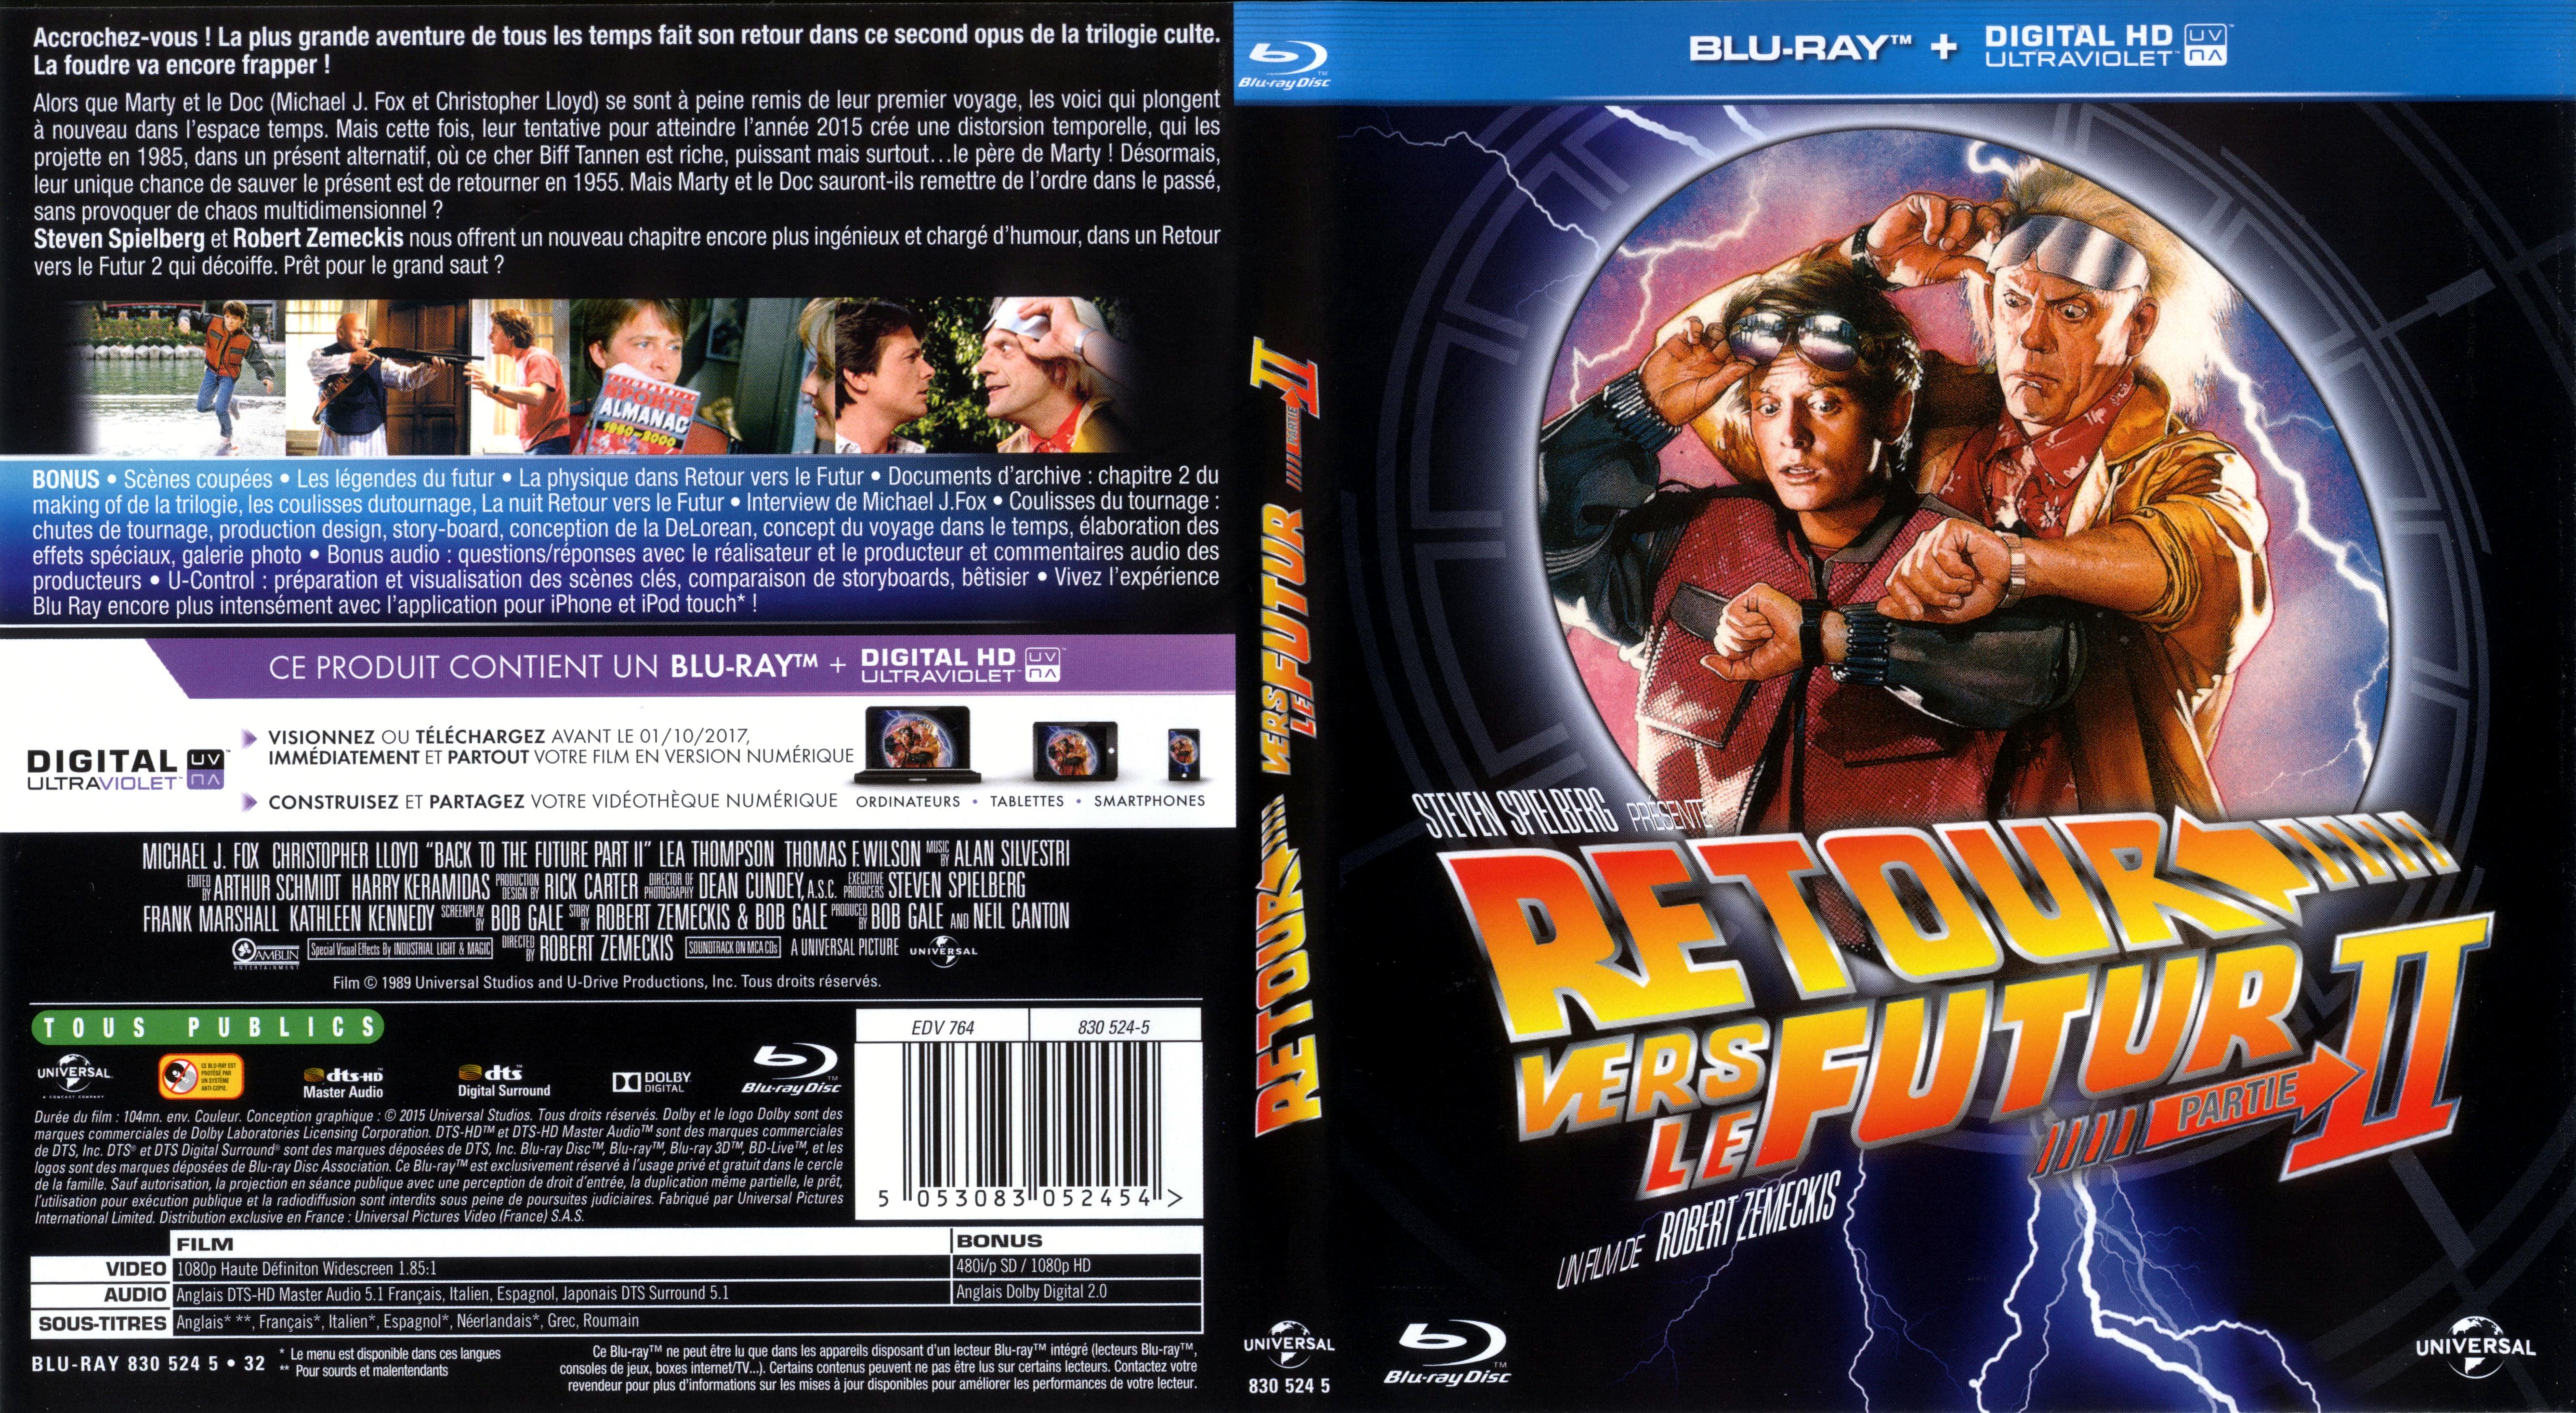 Jaquette DVD Retour vers le futur 2 (BLU-RAY)